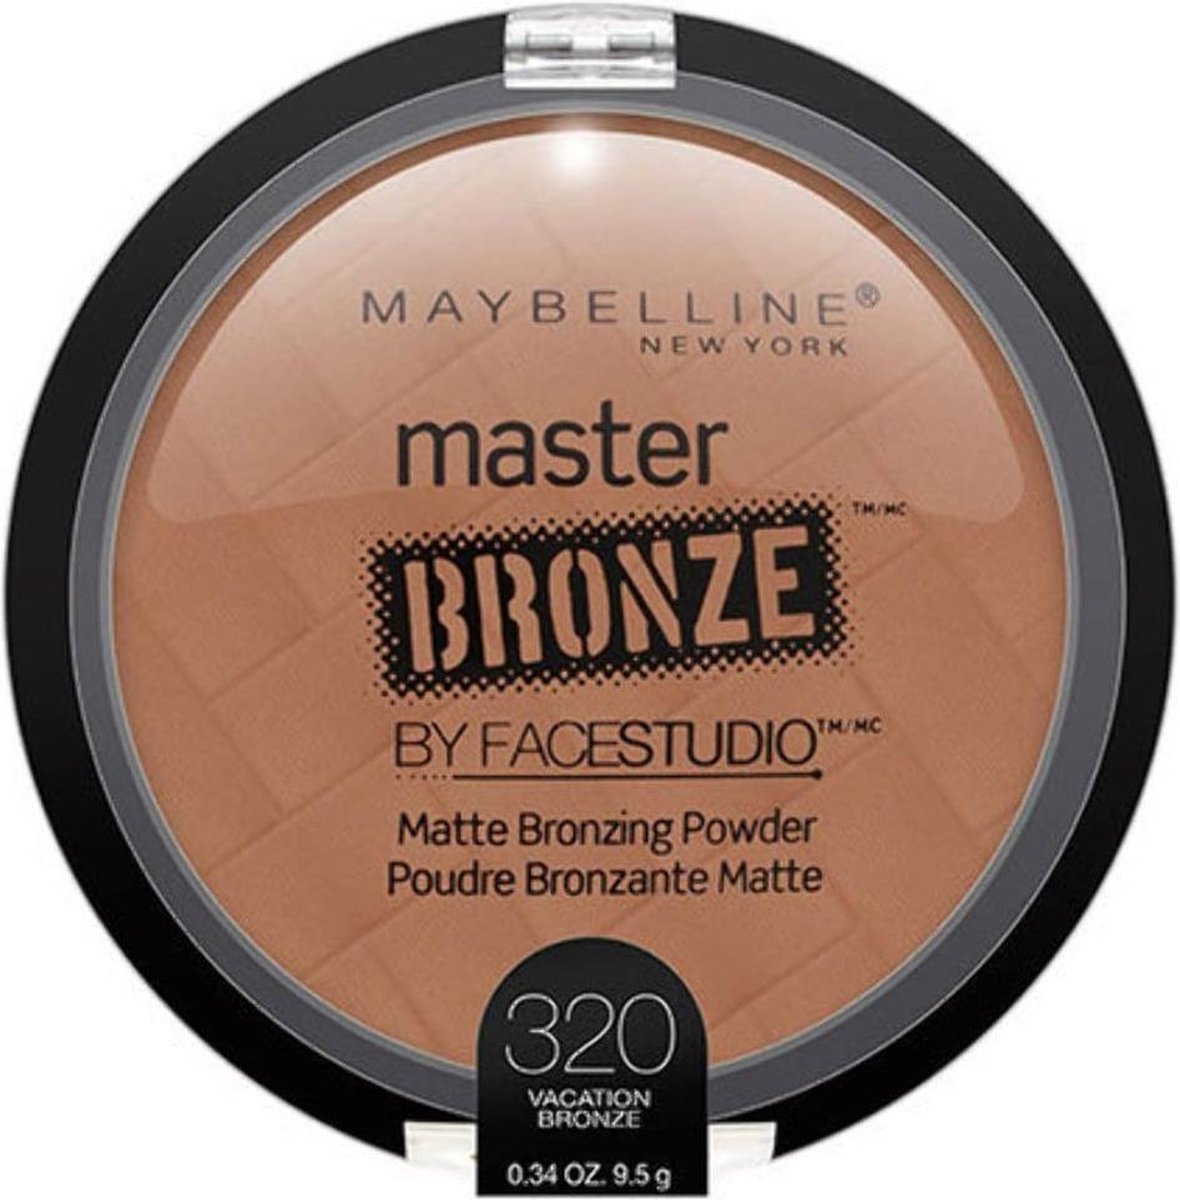 Maybelline Master Bronze Matte Bronzing Powder By Facestudio - 320 Vacation Bronze